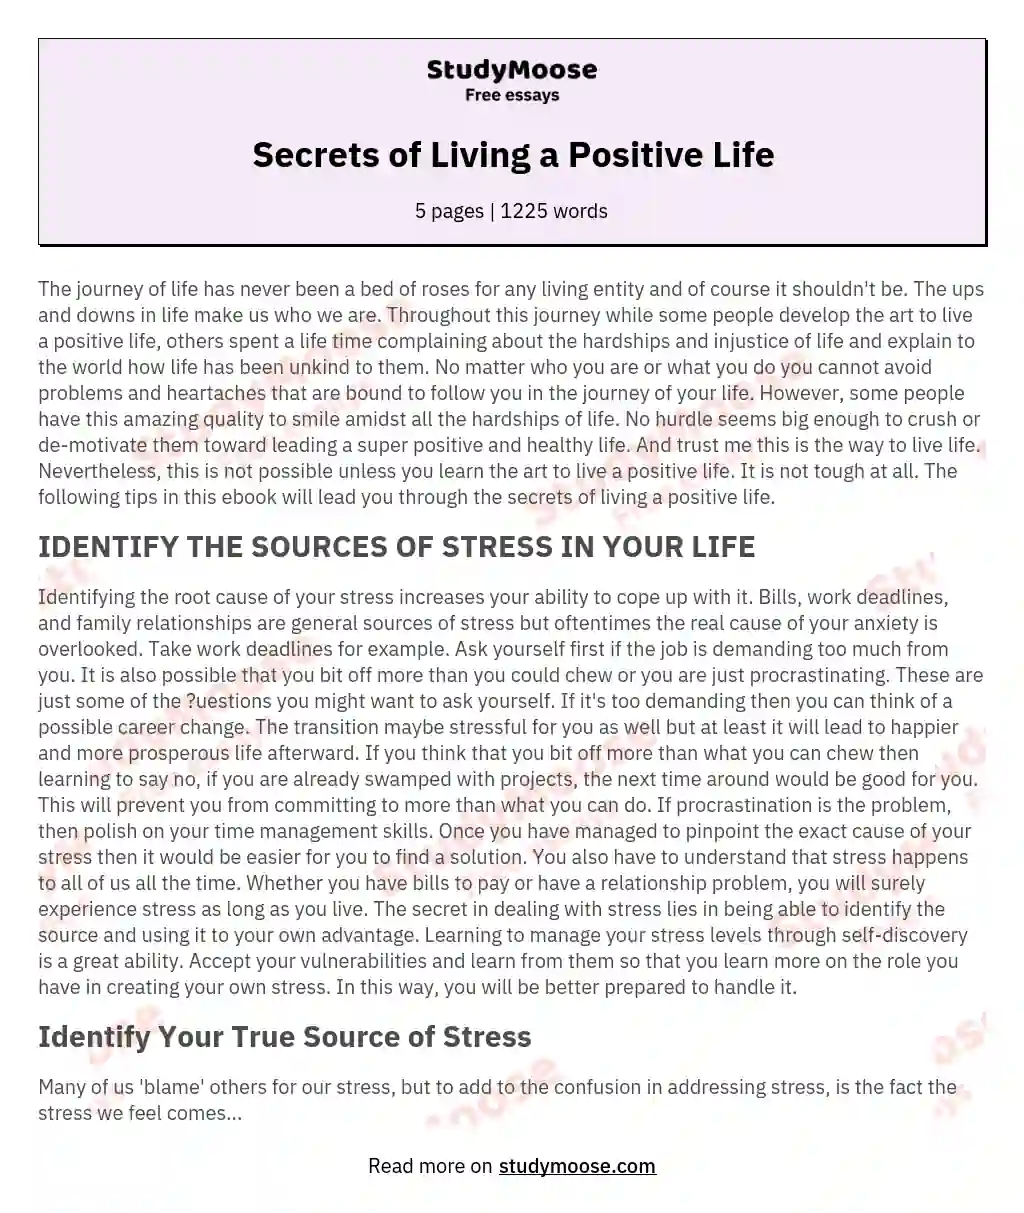 Secrets of Living a Positive Life essay